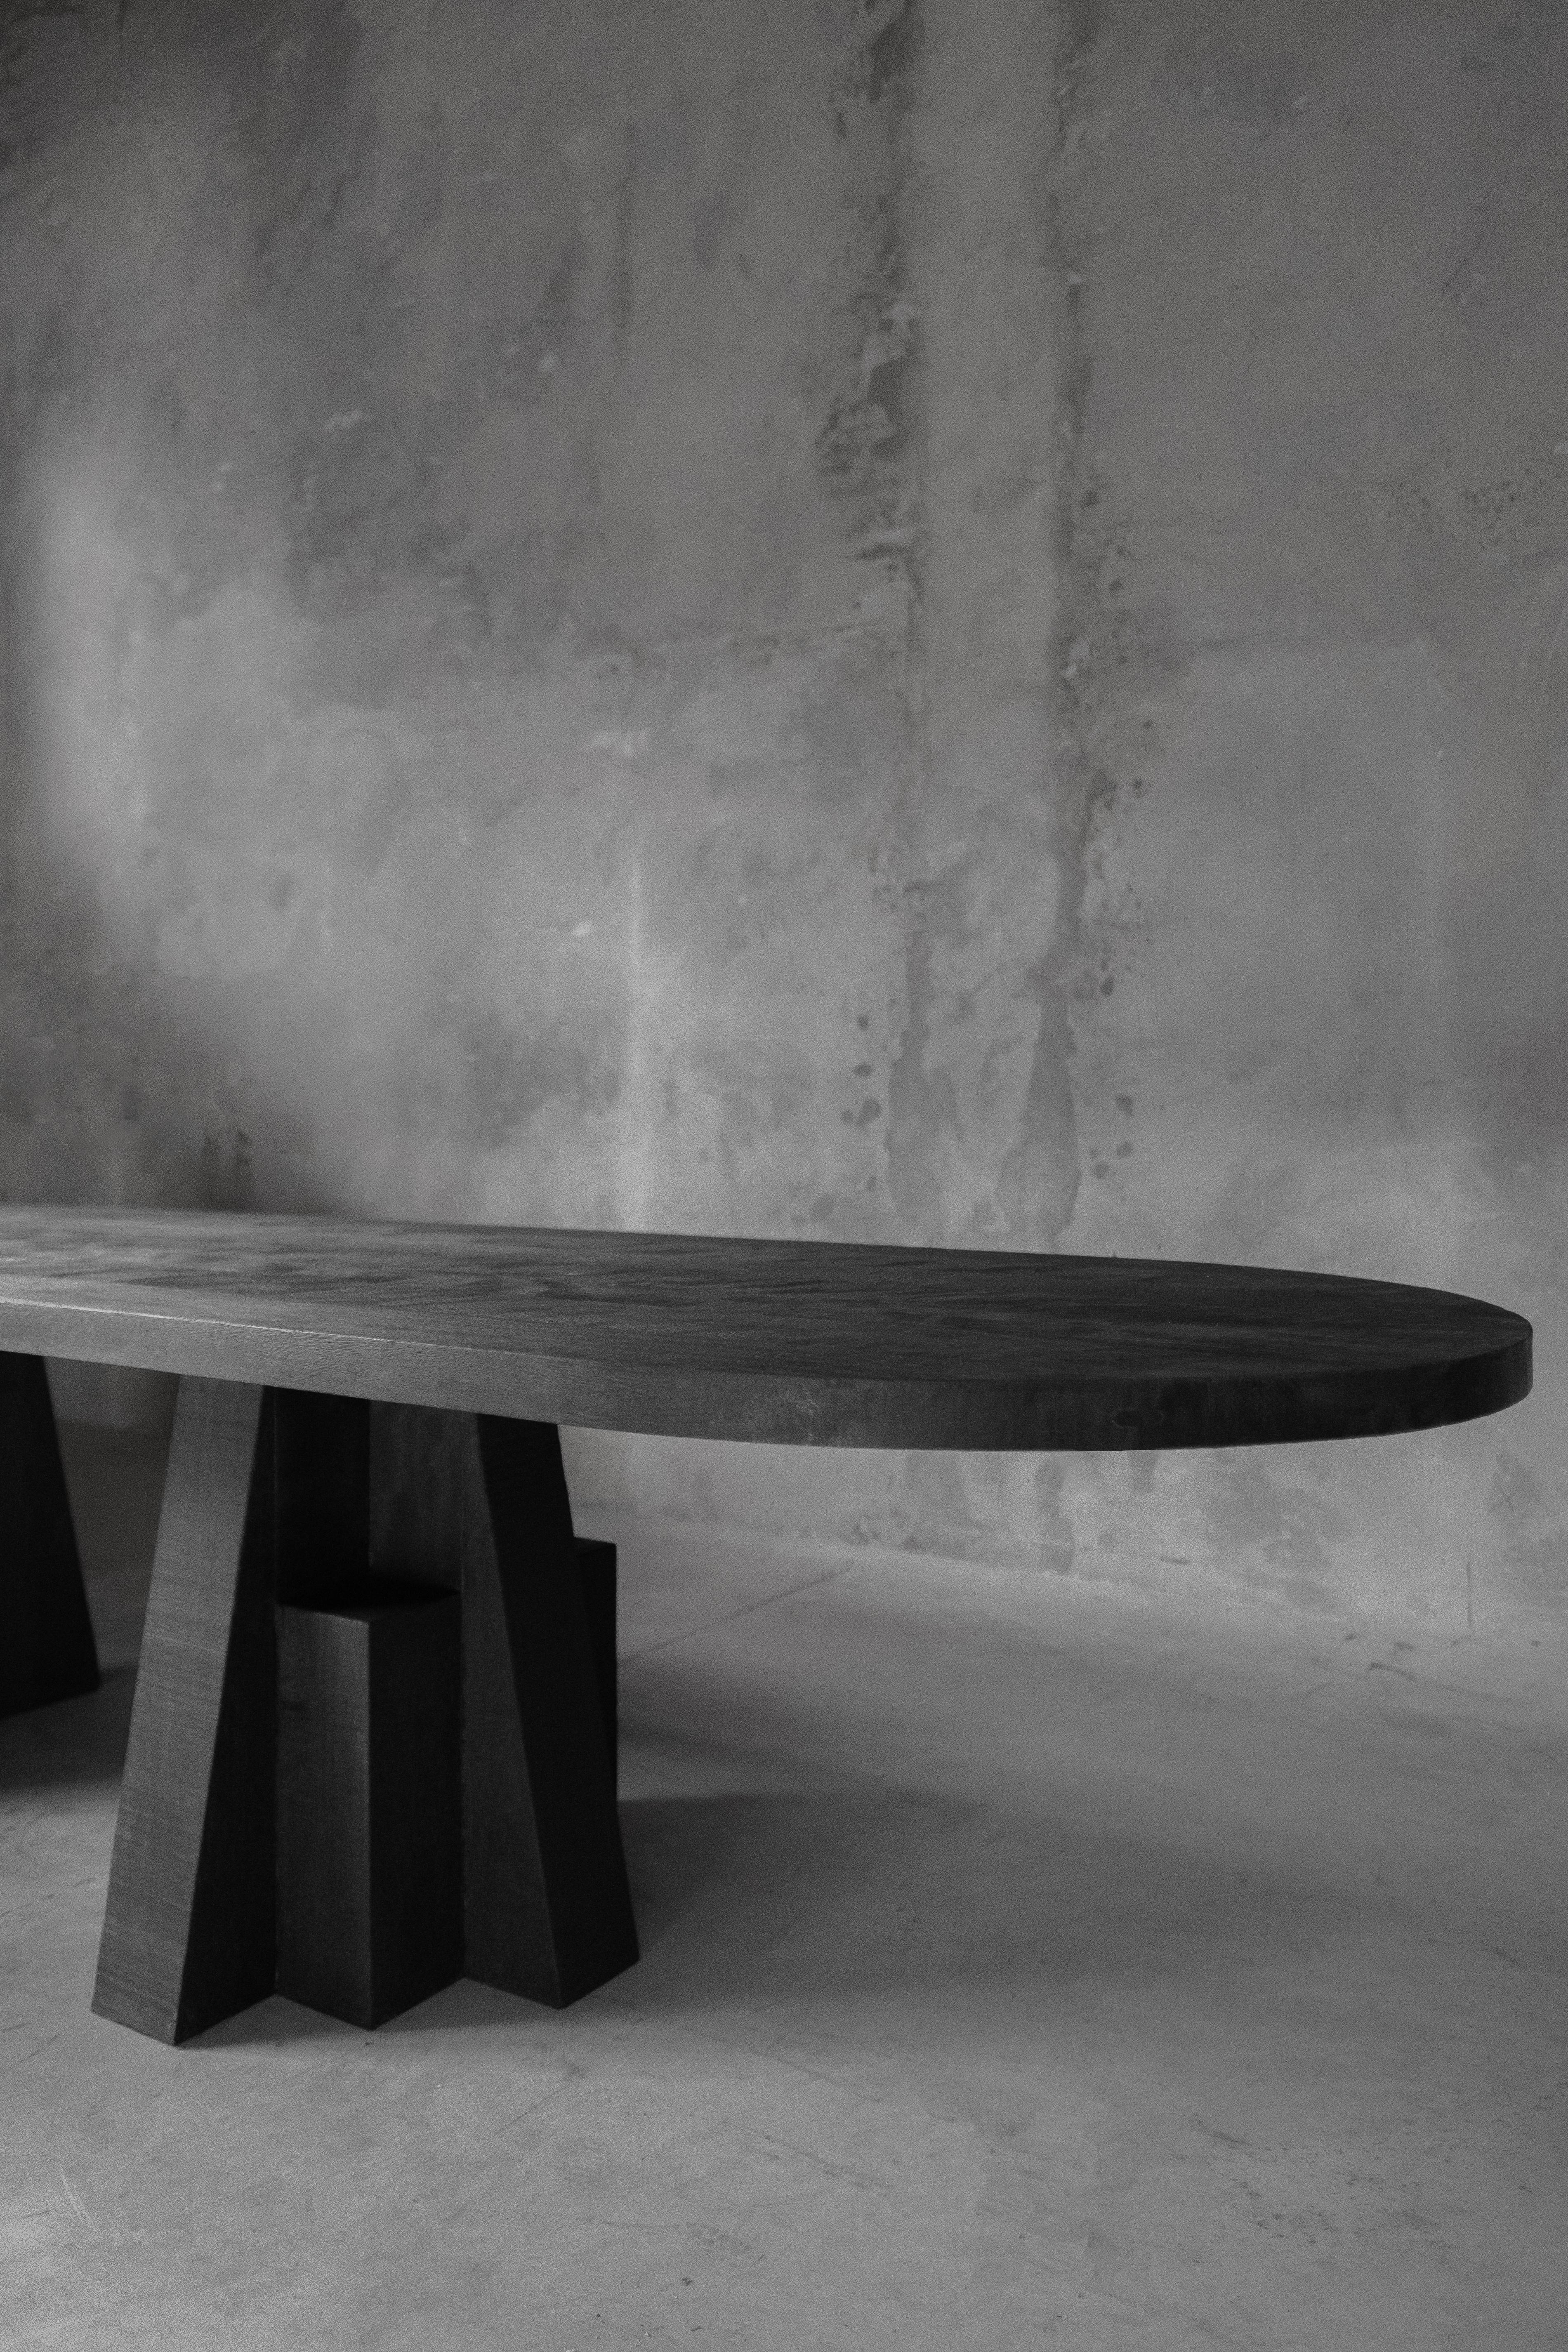 AD table à manger en bois d'iroko noir, sculptée à la main, signée Arno Declercq
Tableau ADS 2.0
Mesures : Petit 340 cm L x 73 cm H x 105 cm P, 133.86